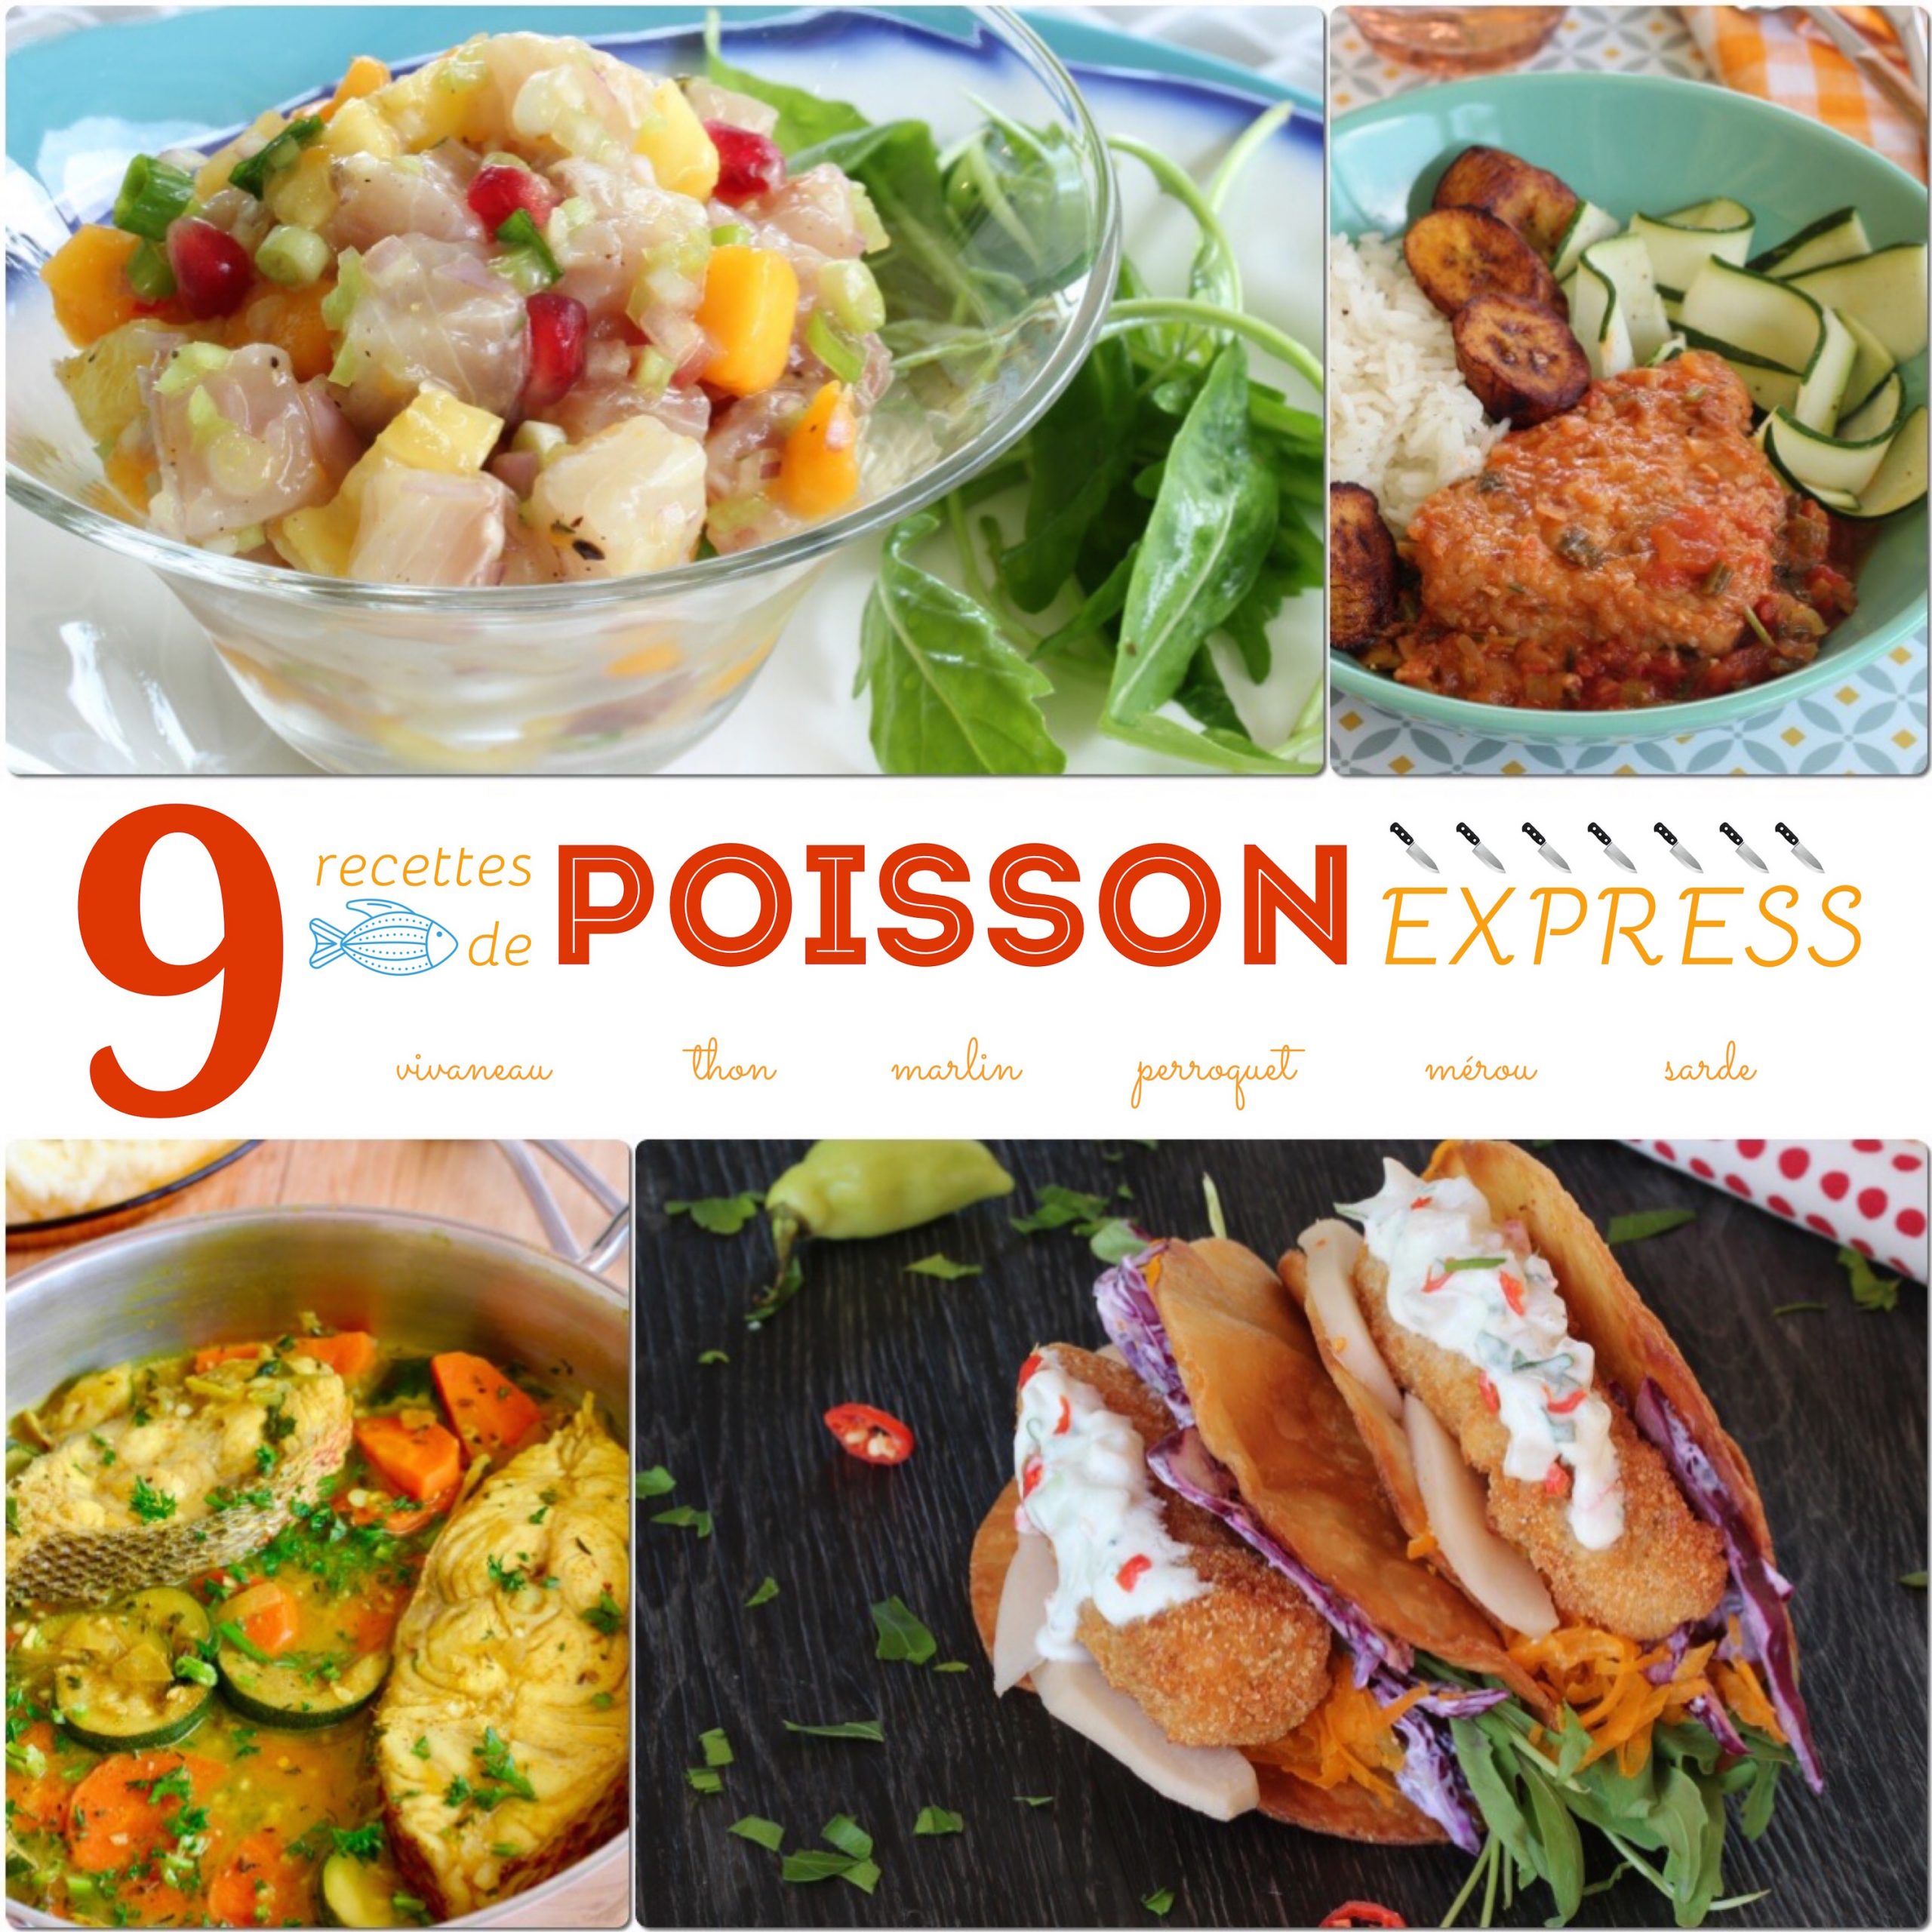 9 recettes de POISSON express savoureuses en MOINS DE 30 min !